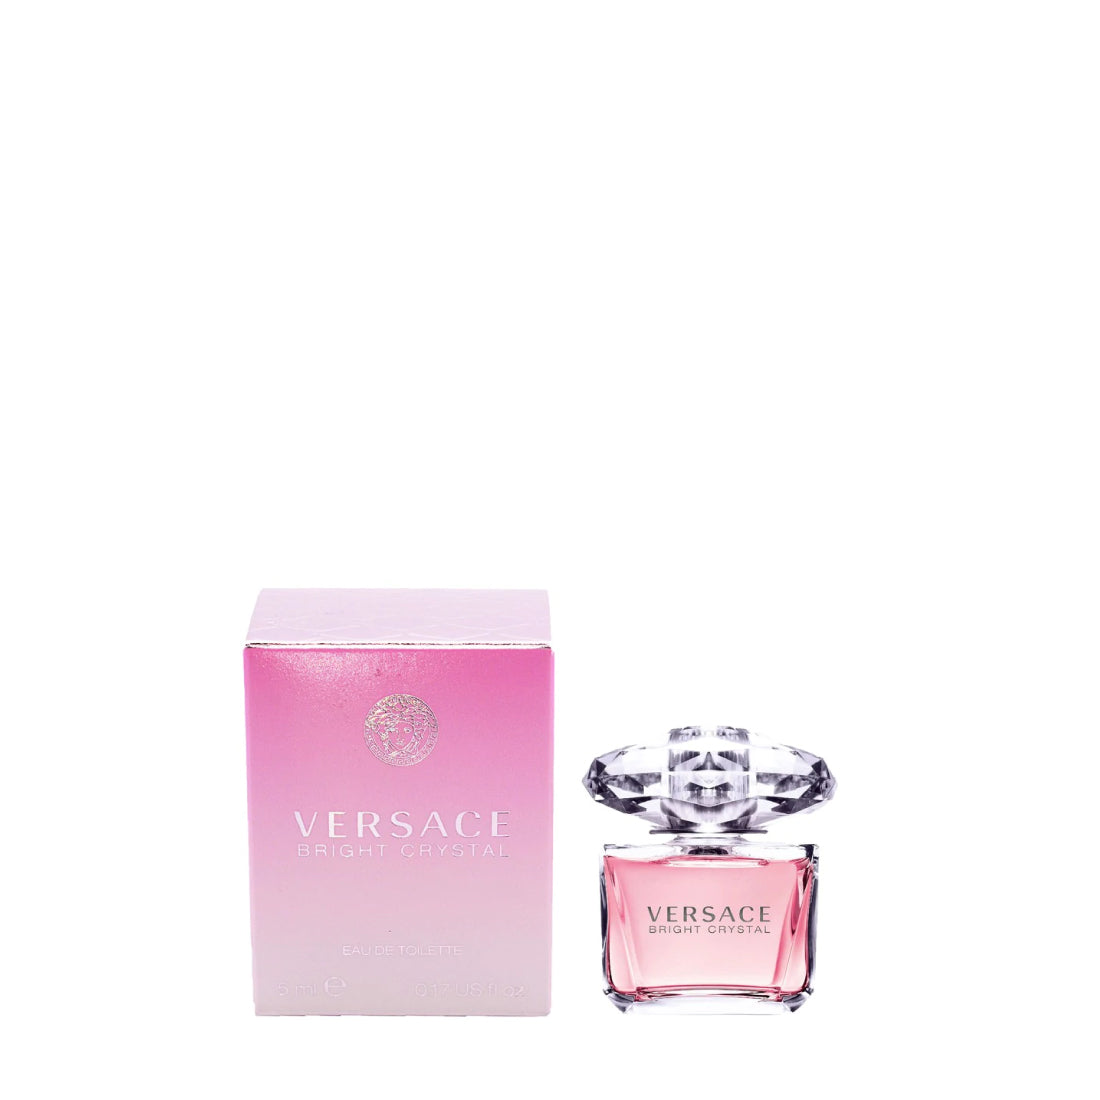 Outlet Buy Perfume Now – Crystal Eau for | Women Plus De Toilette Versace Bright